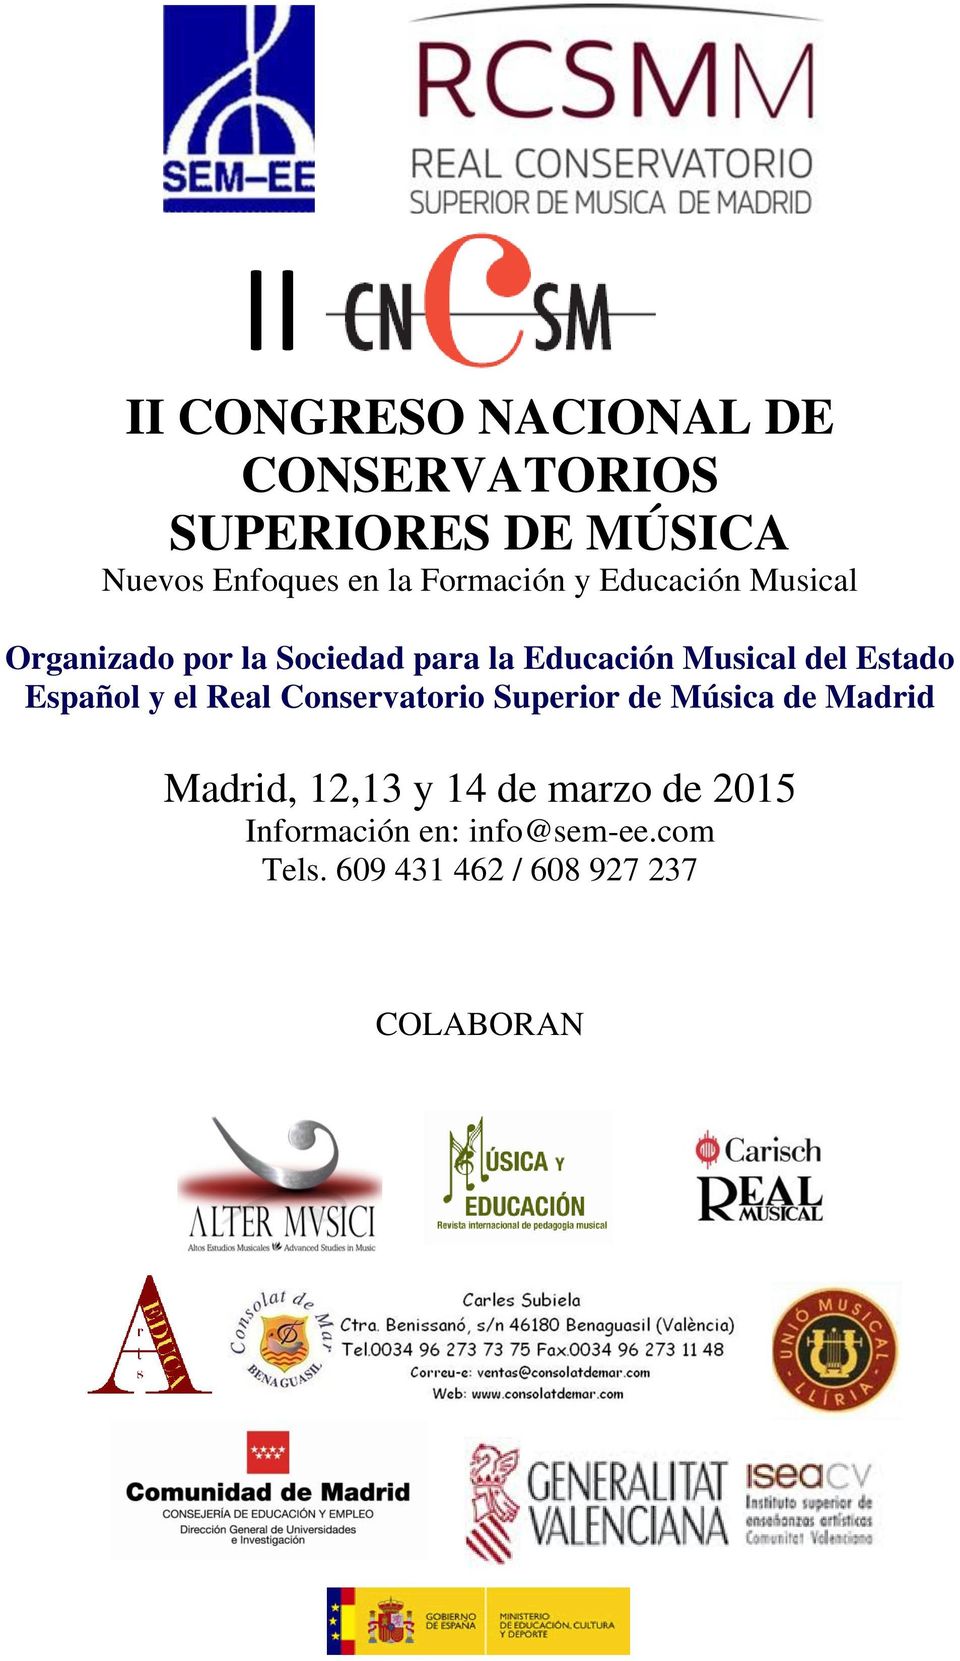 Real Conservatorio Superior de Música de Madrid Madrid, 12,13 y 14 de marzo de